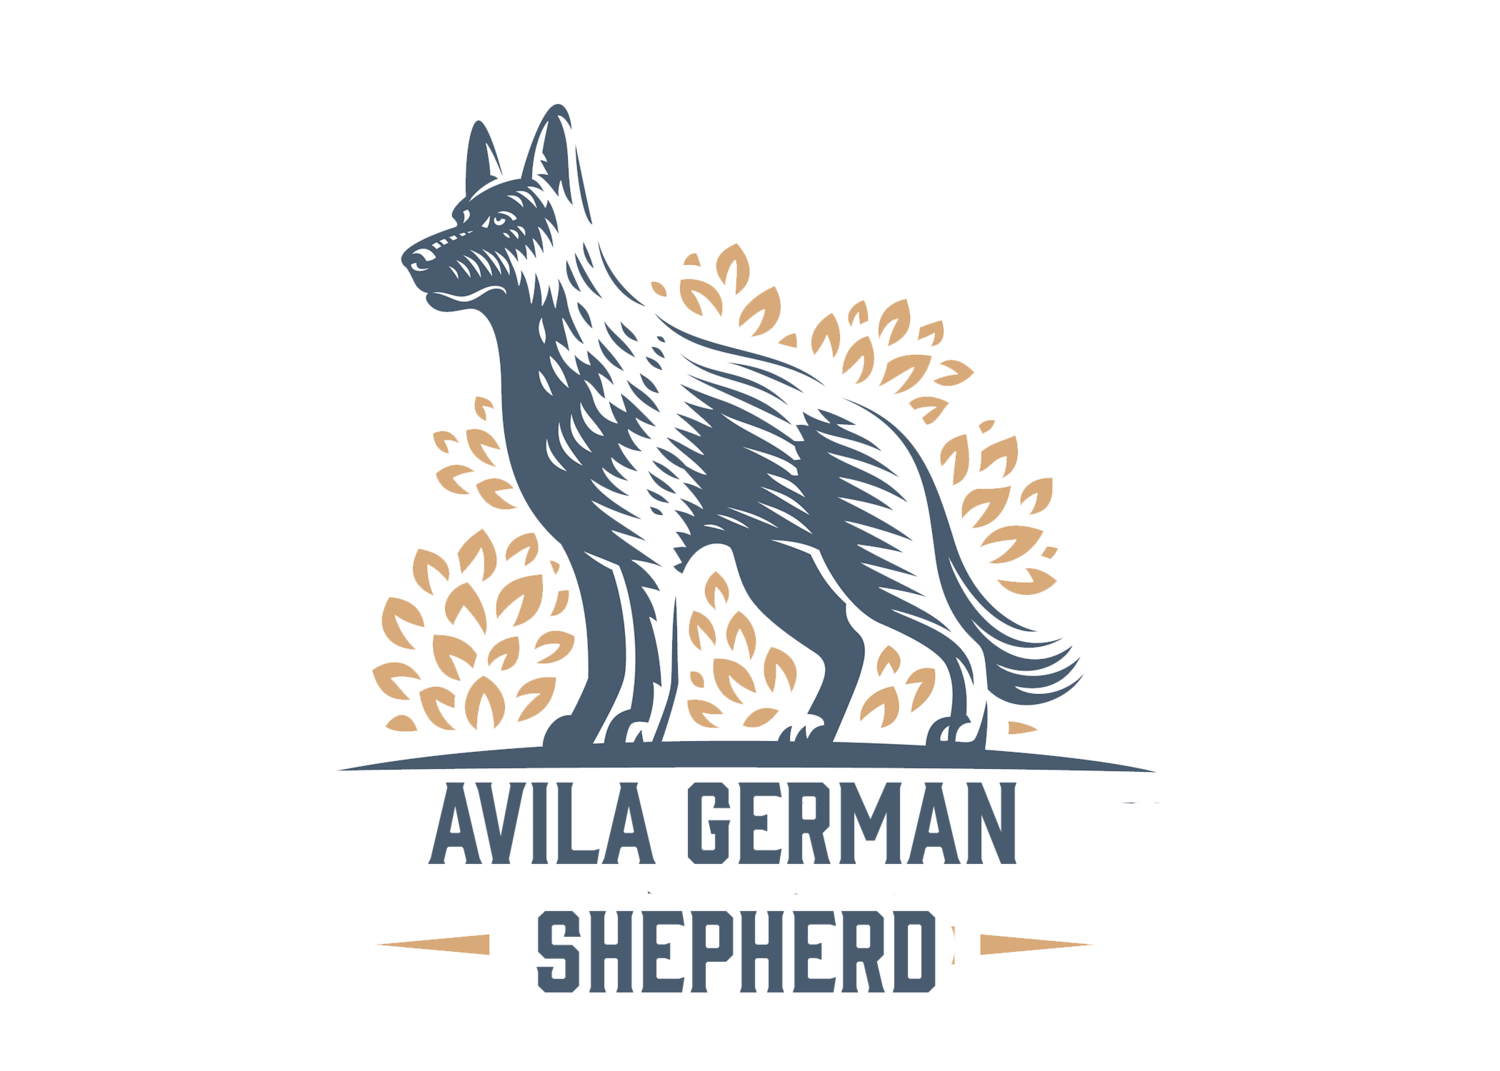 Avila German Shepherd